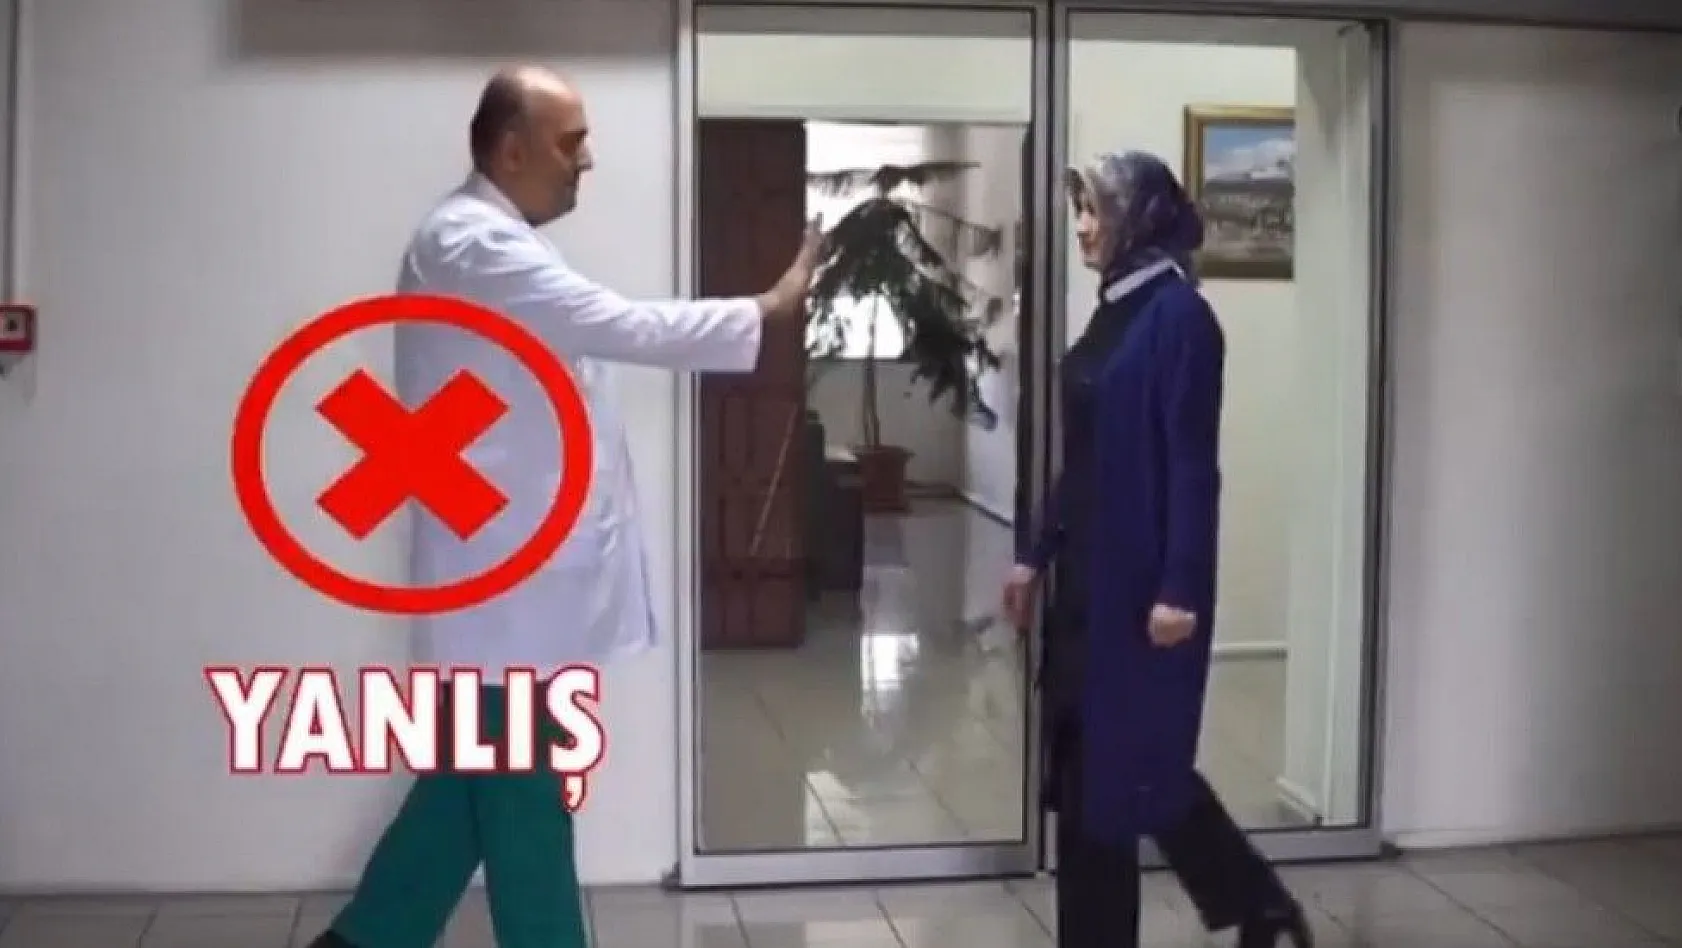 Kayseri Devlet Hastanesi korunma tedbirleri ile ilgili doğru ve yanlış bilinenlerin anlatıldı kısa video yayınladı